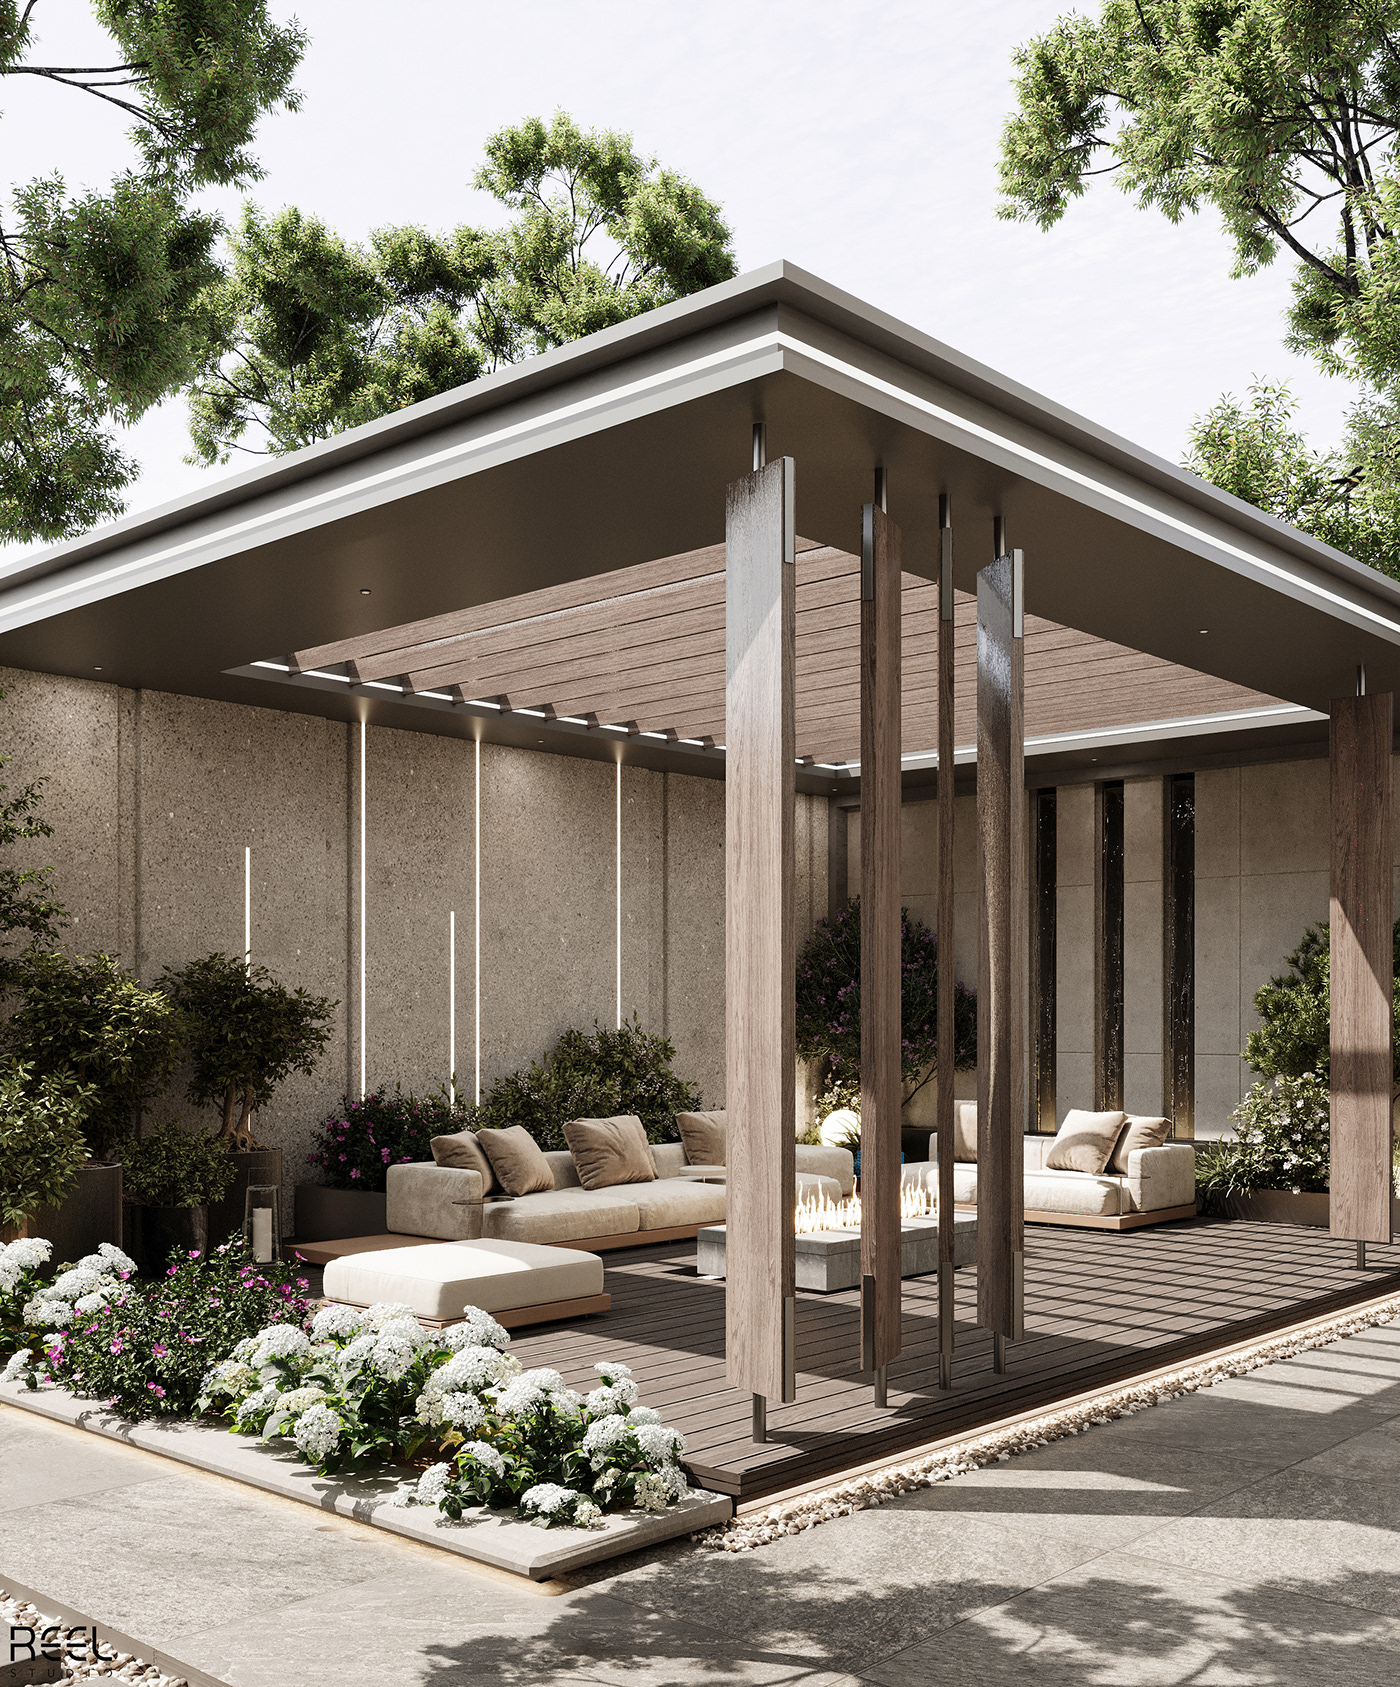 architecture Landscape design visualization archviz Outdoor garden Render 3D interior design 